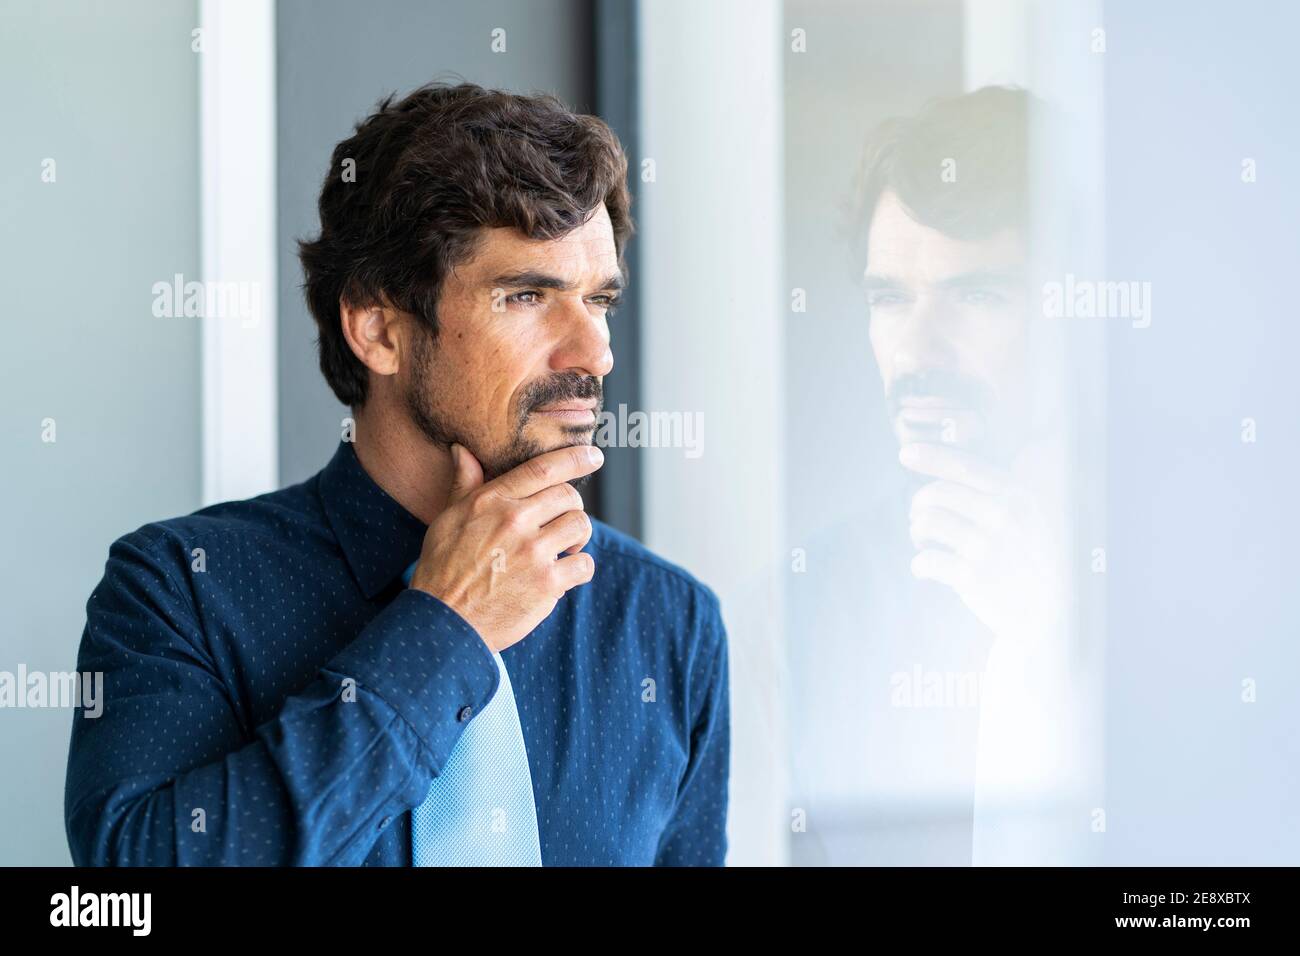 Uomo d'affari che guarda attraverso la finestra. Ritratto maschile di successo in ufficio con la giusta attenzione, serietà e serena atteggiamento. Foto Stock